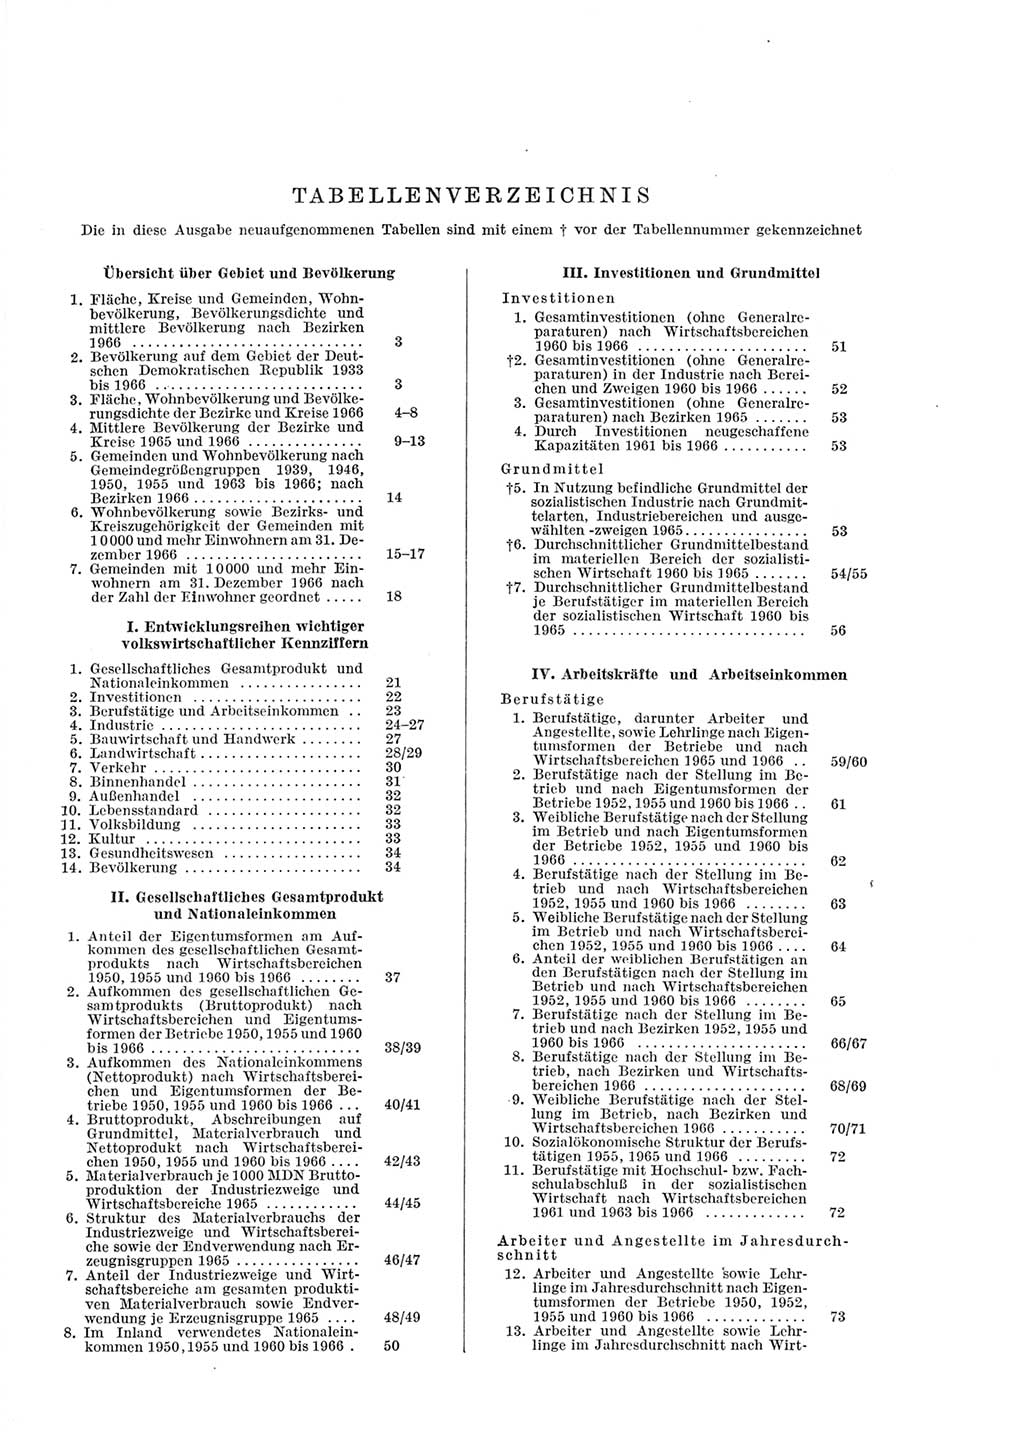 Statistisches Jahrbuch der Deutschen Demokratischen Republik (DDR) 1967, Seite 6 (Stat. Jb. DDR 1967, S. 6)